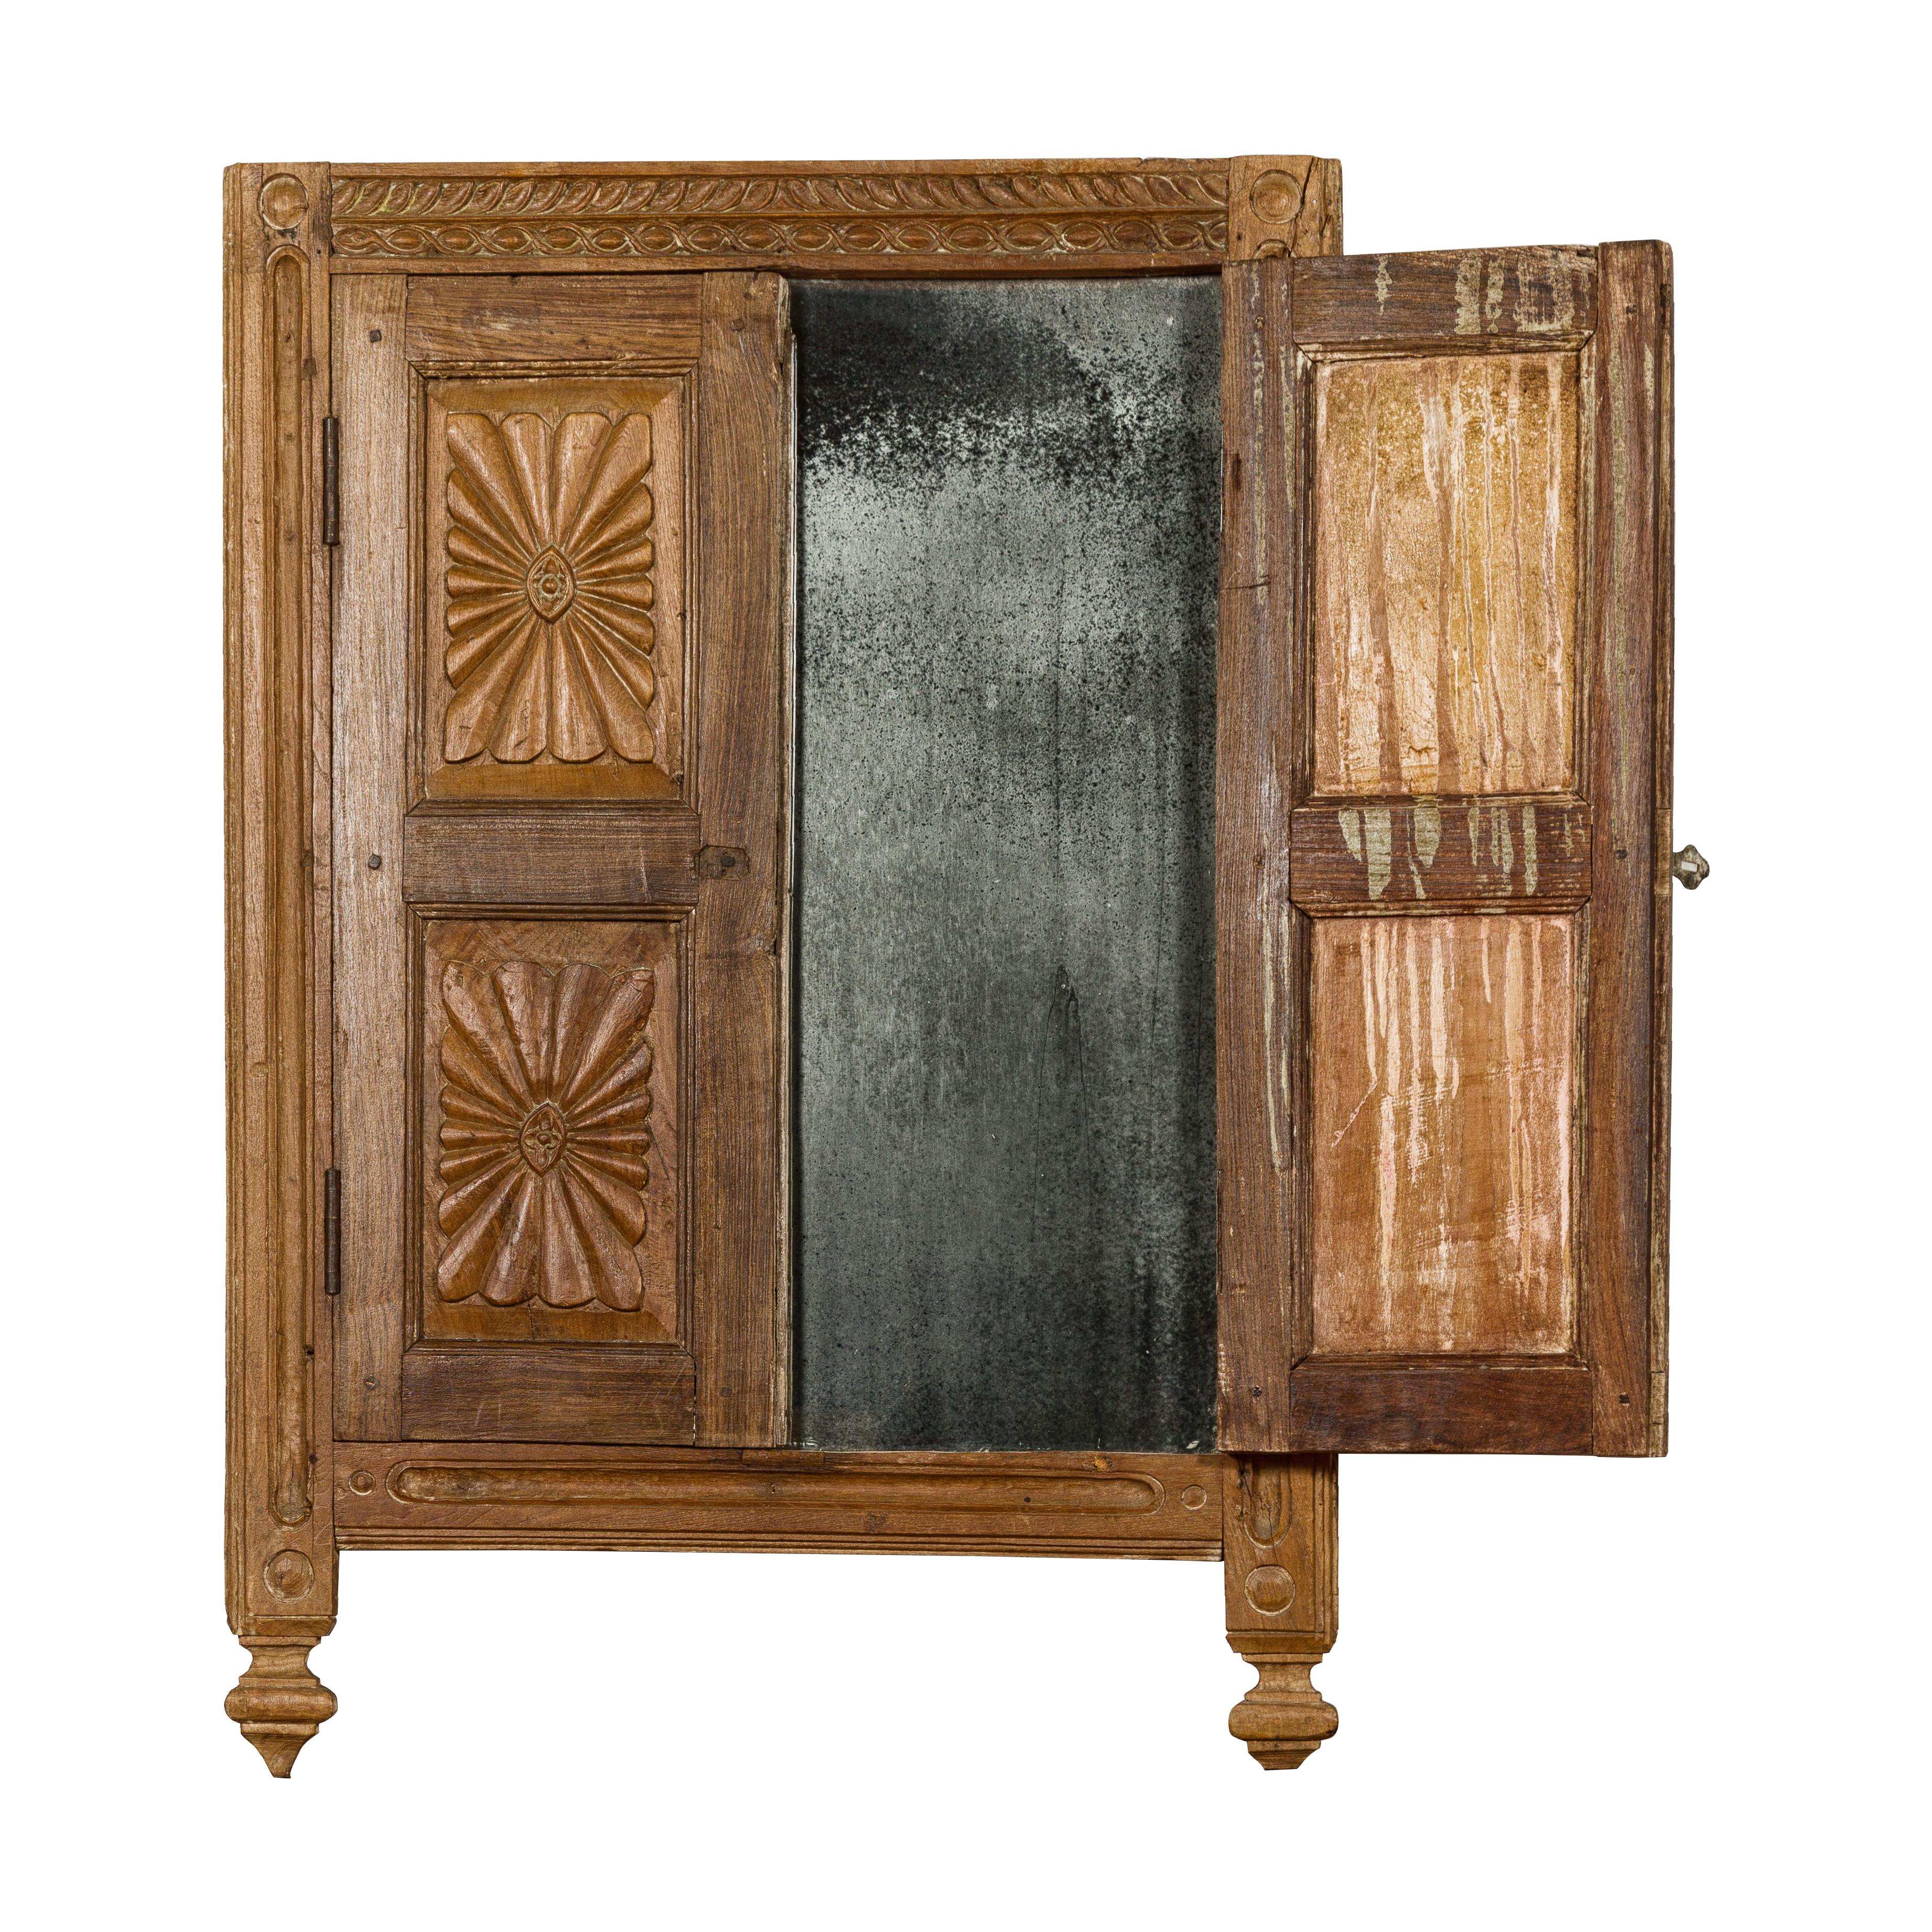 Une fenêtre ancienne en bois sculpté indien a été réaménagée avec un miroir fumé très ancien. Cette ancienne fenêtre indienne en bois sculpté, judicieusement équipée d'un miroir fumé et très ancien, est une pièce captivante qui allie l'histoire au